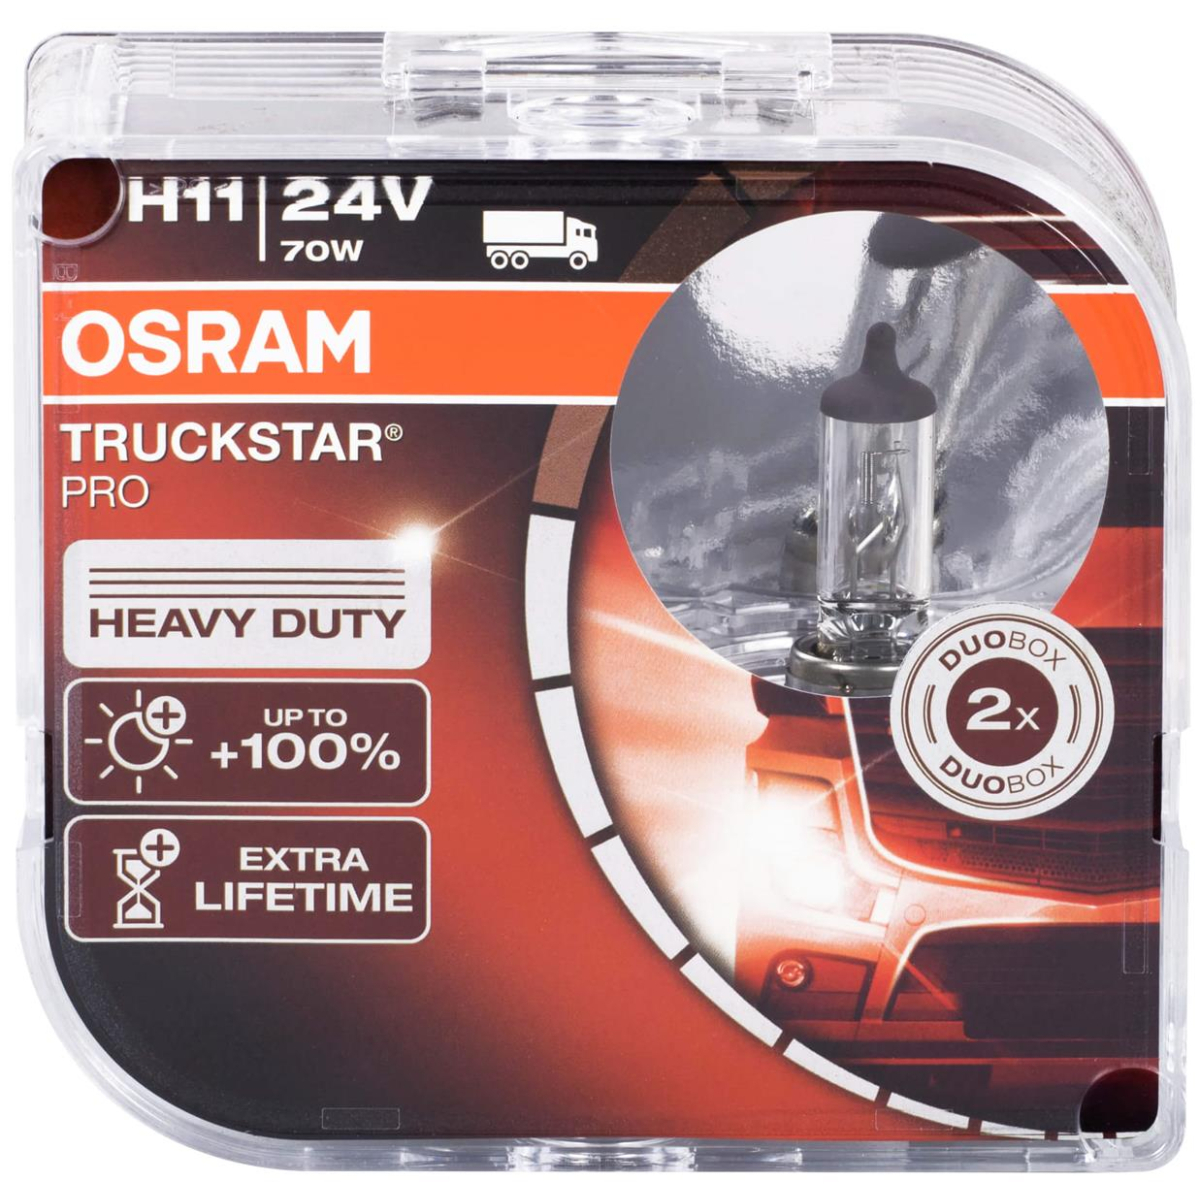 Osram Truckstar Pro H11 64216TSP-HCB 24V Duobox truck